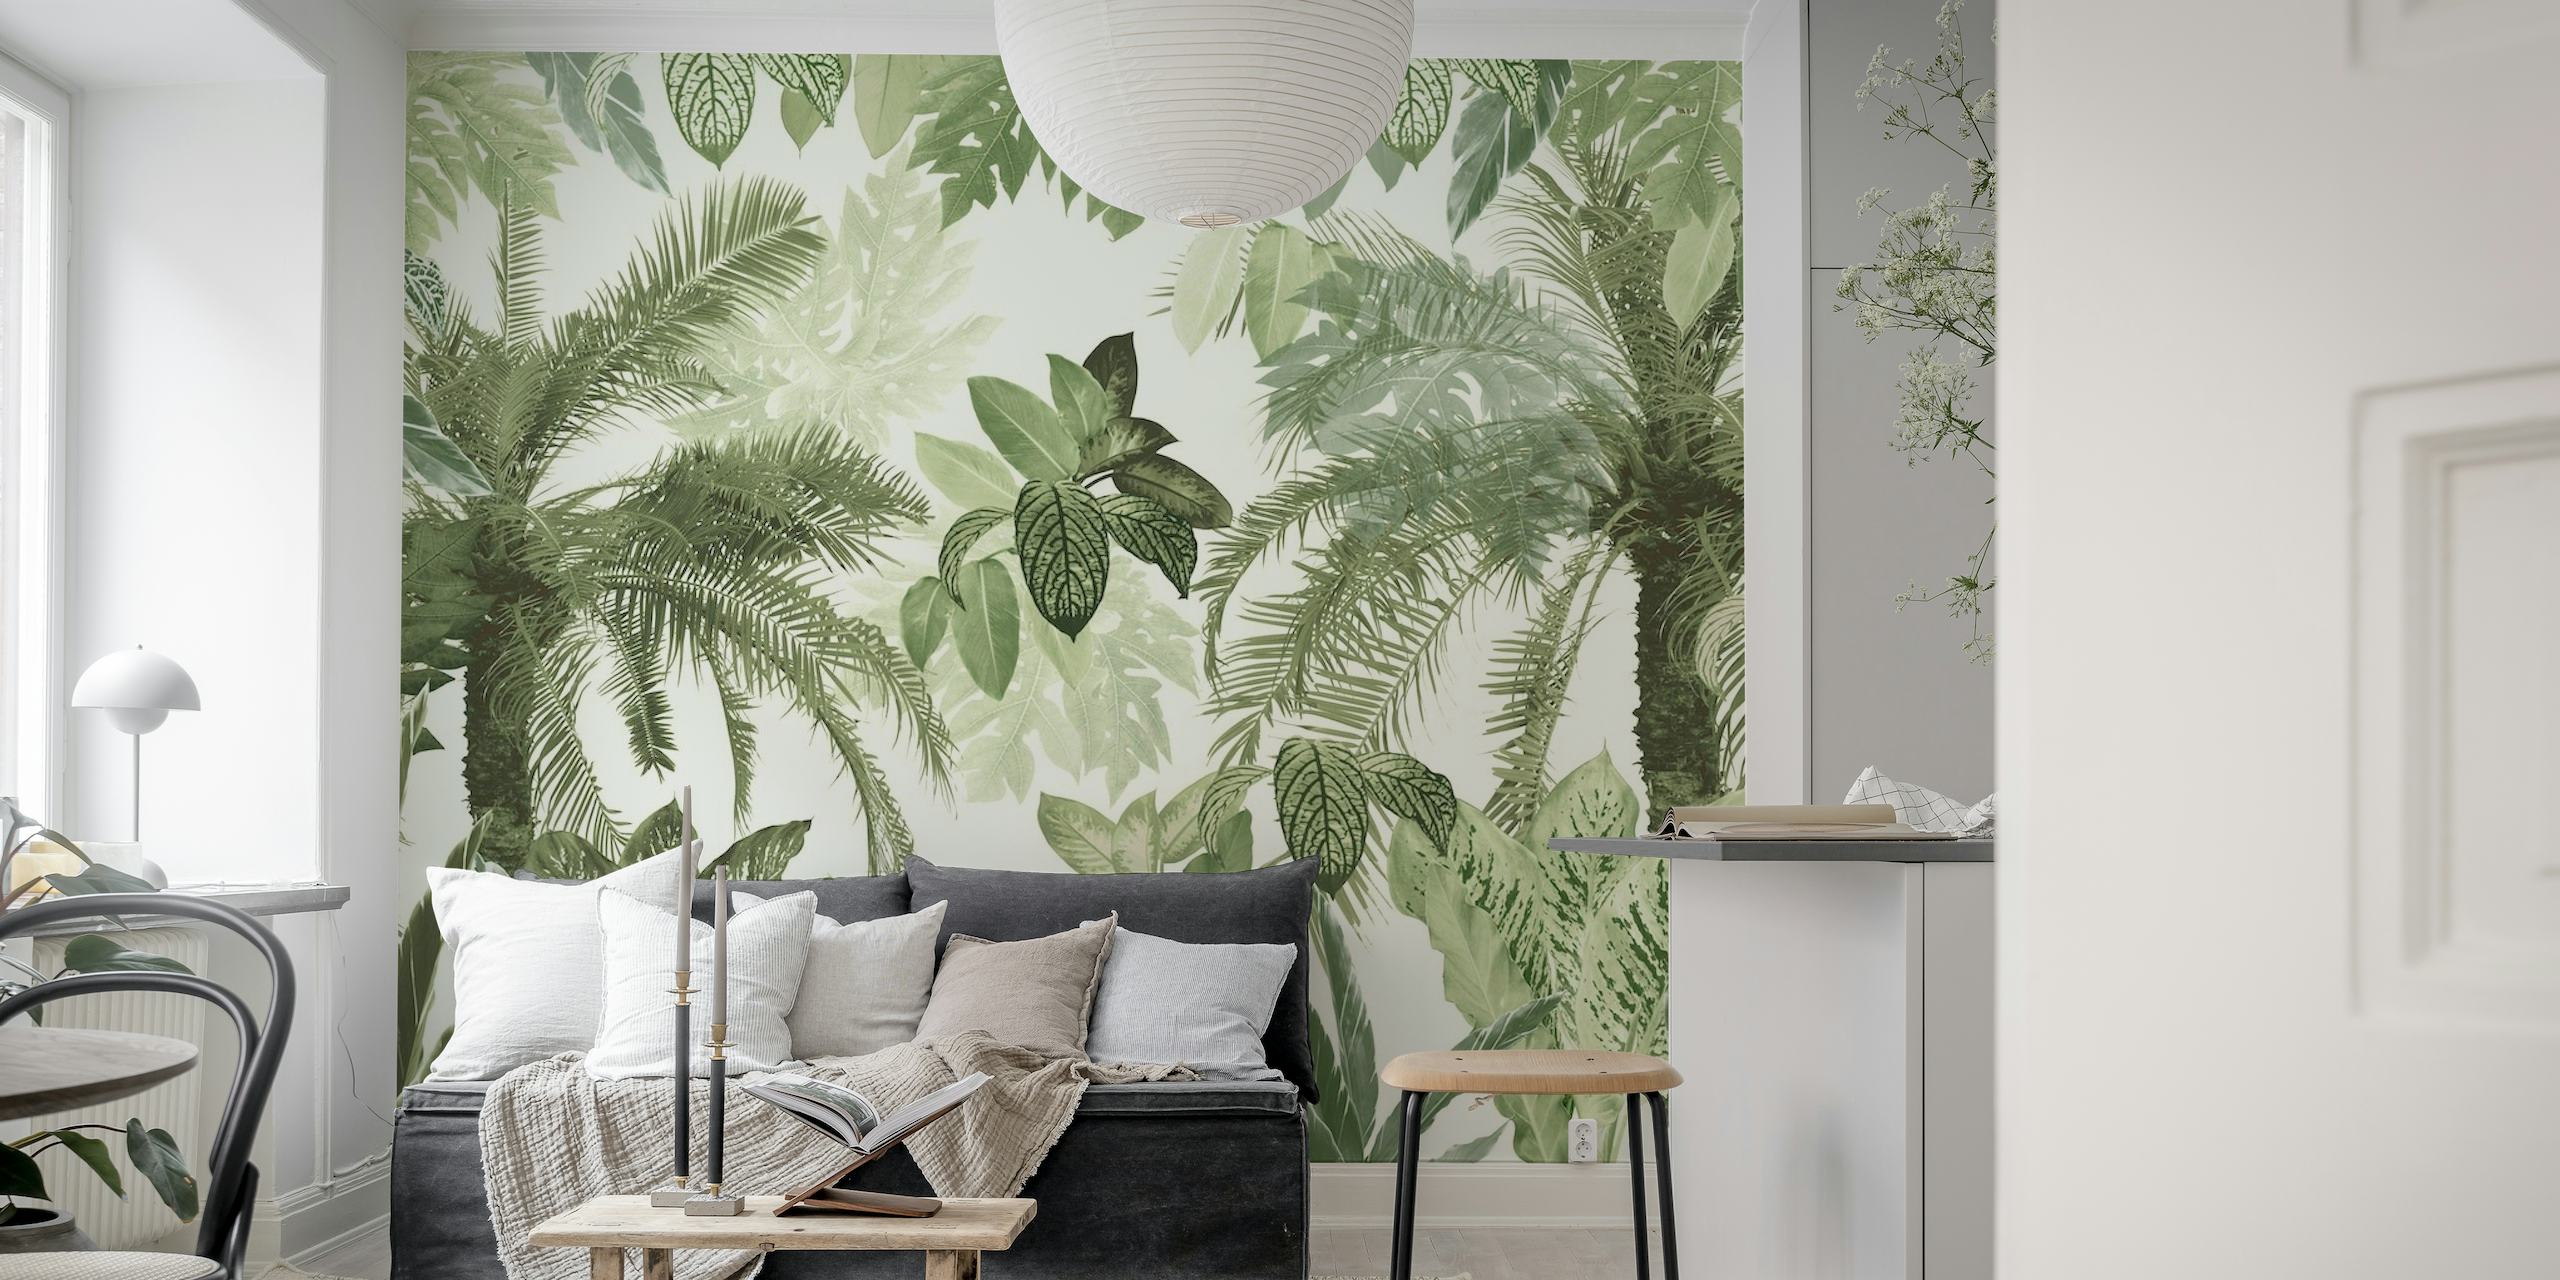 Un sofisticado mural de hojas de jungla tropical que muestra una variedad de follaje verde con un toque vintage.